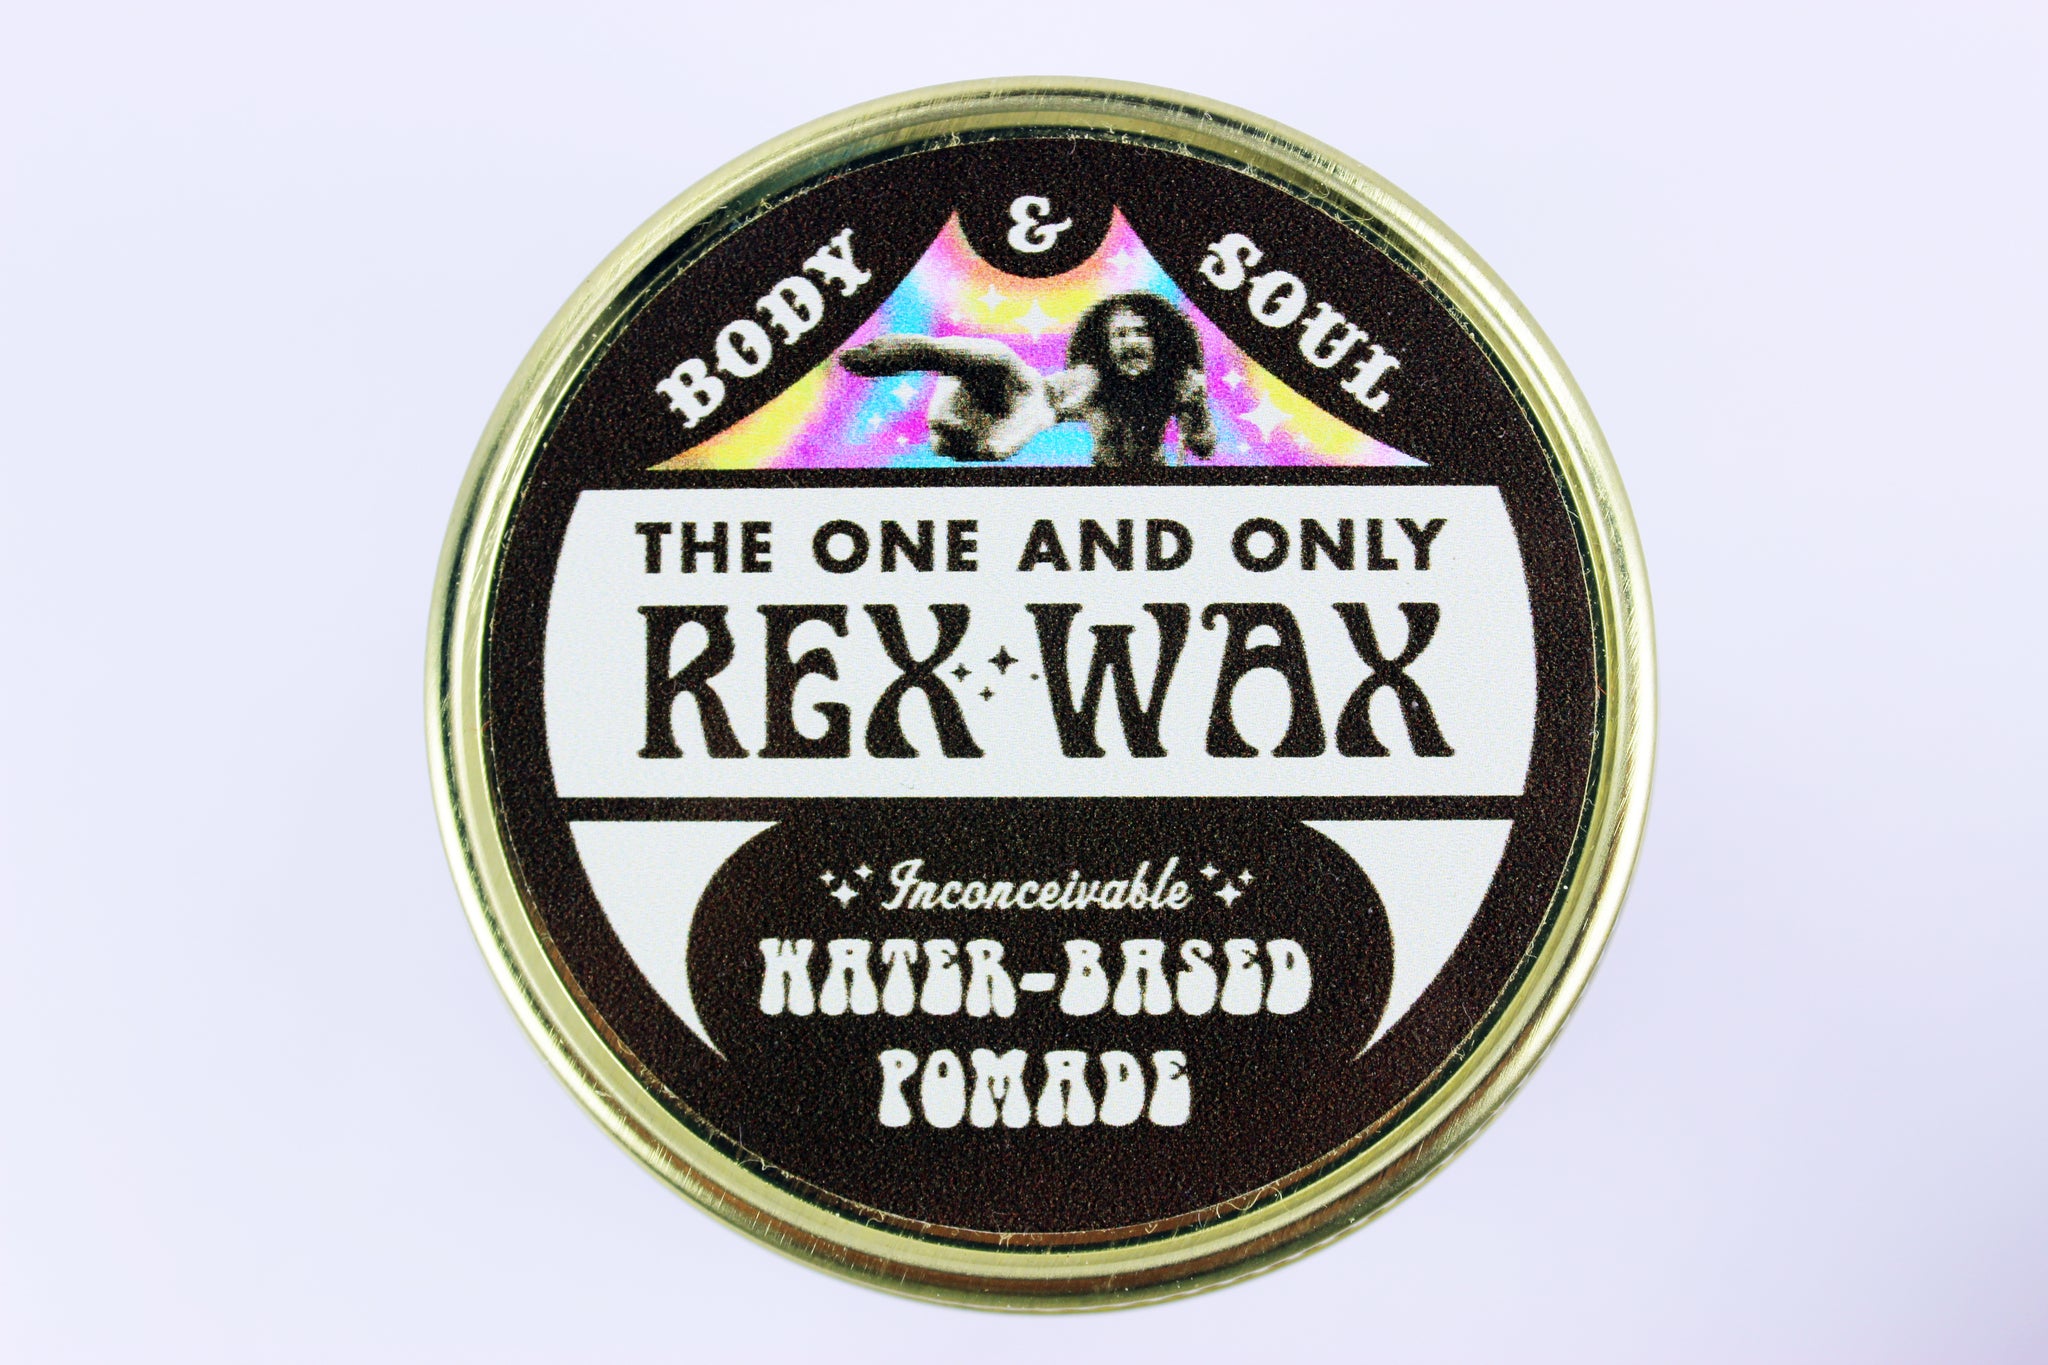 Rex Wax